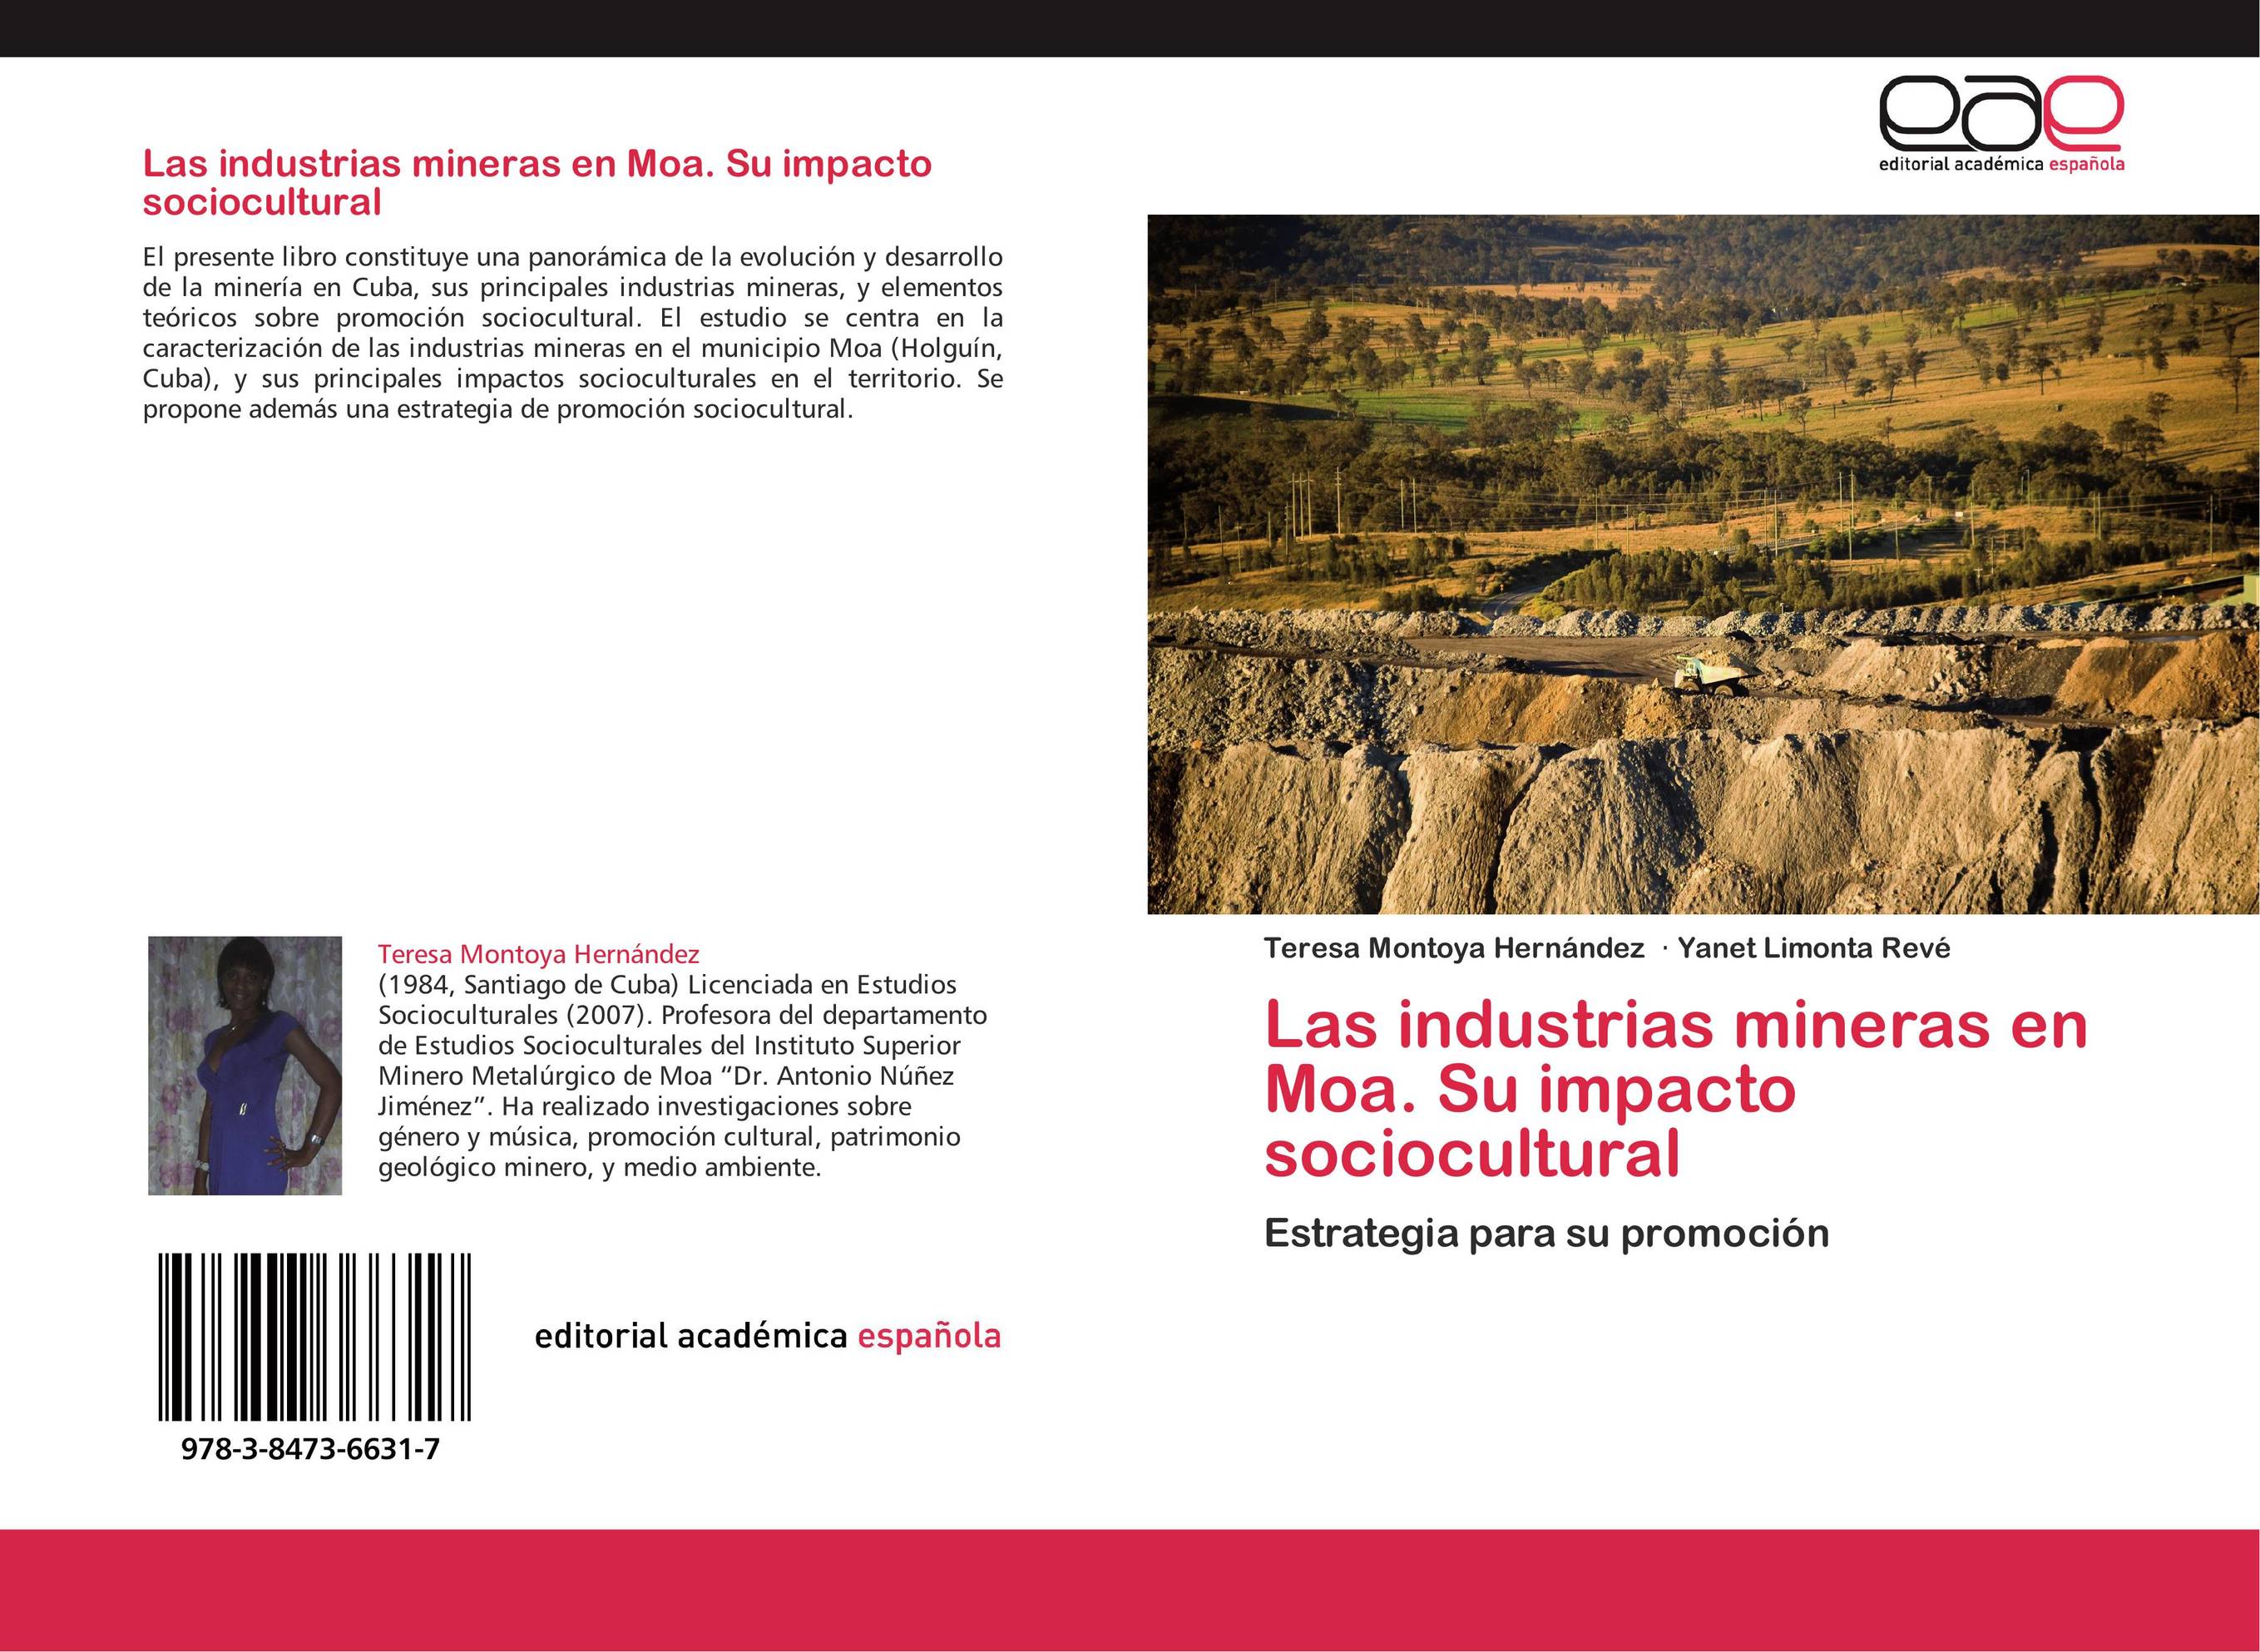 Las industrias mineras en Moa. Su impacto sociocultural